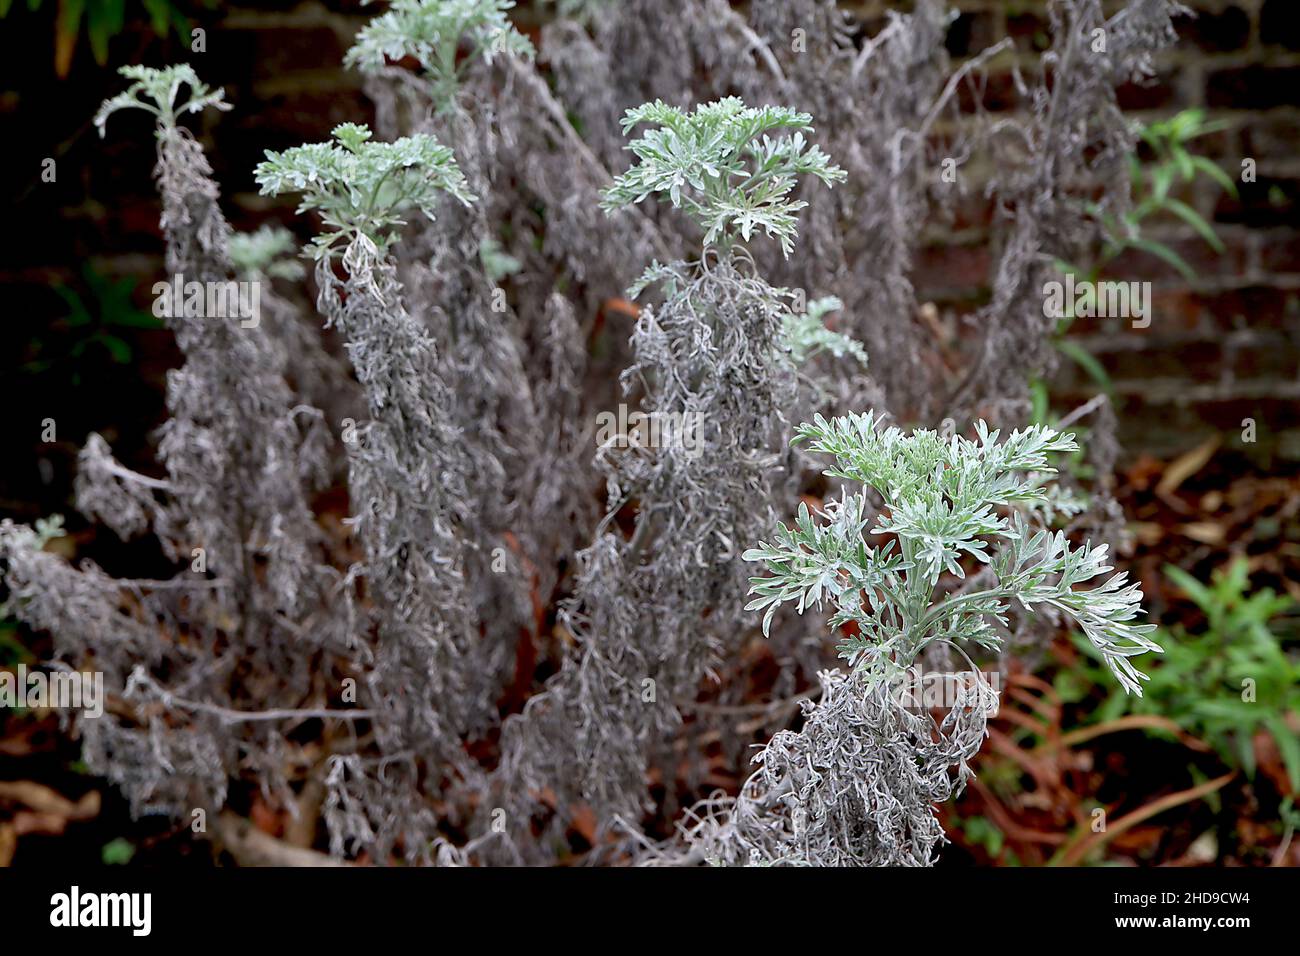 Artemisia ‘Powis Castle’ Wormwood Powys Castle – fogliame argentato di piume, dicembre, Inghilterra, Regno Unito Foto Stock